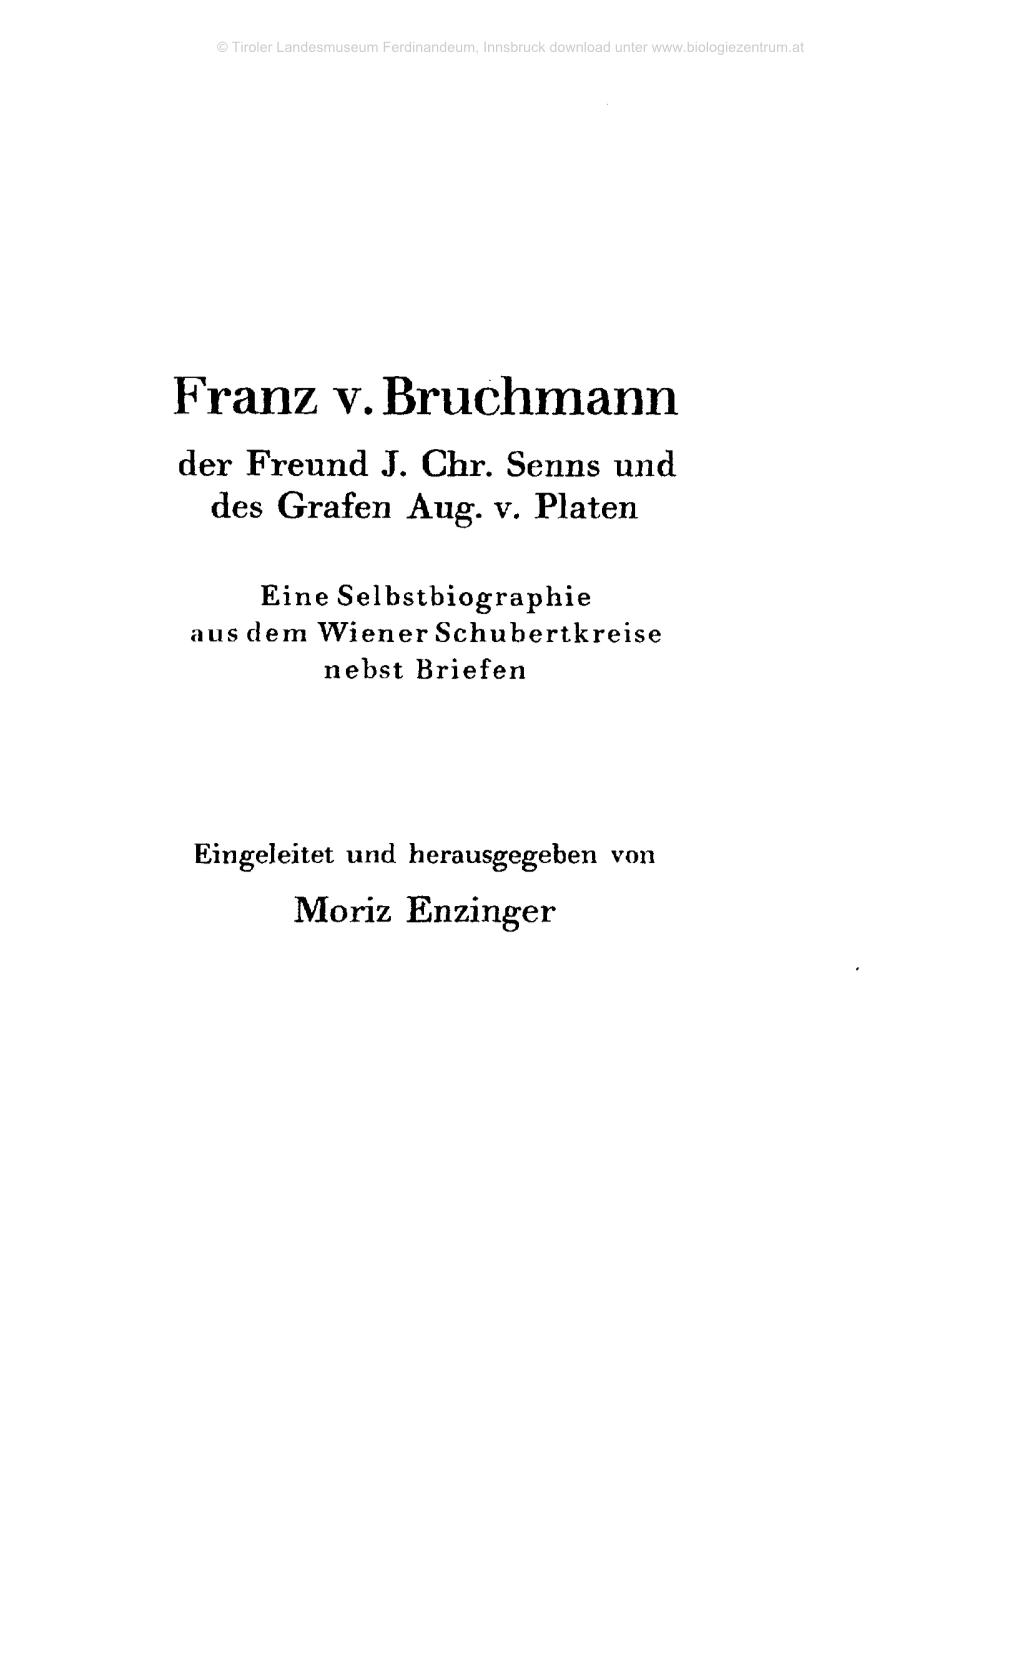 Franz V. Bruchmann Der Freund J